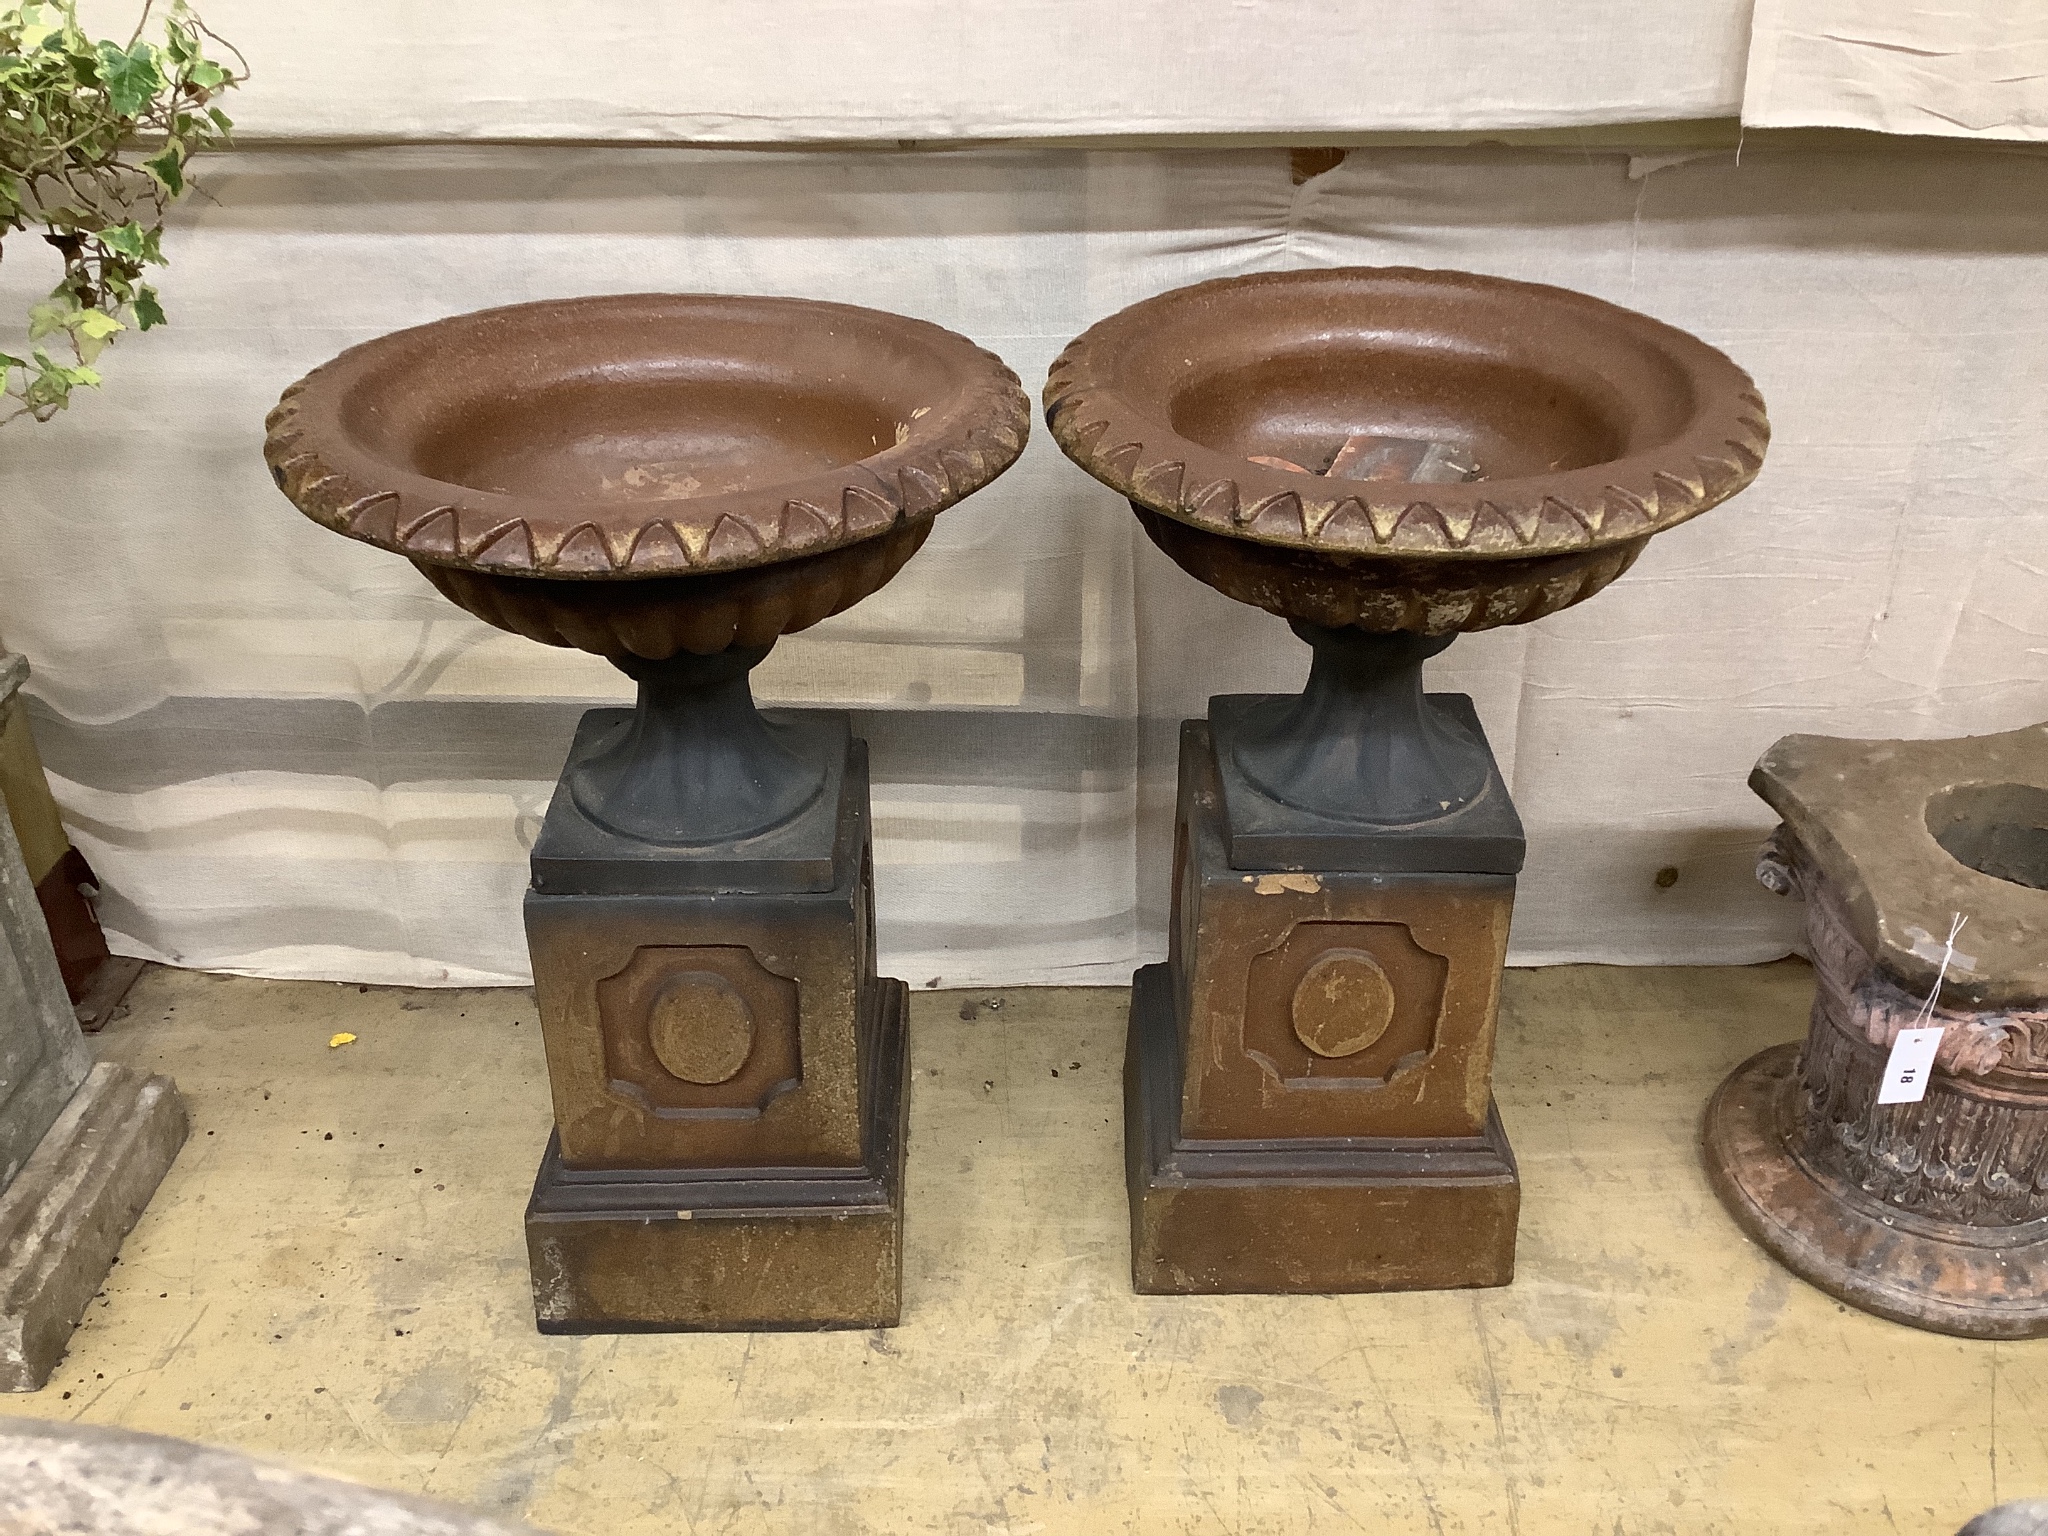 A pair of glazed stoneward garden urns on pedestals, height 79cm, diameter 51cm